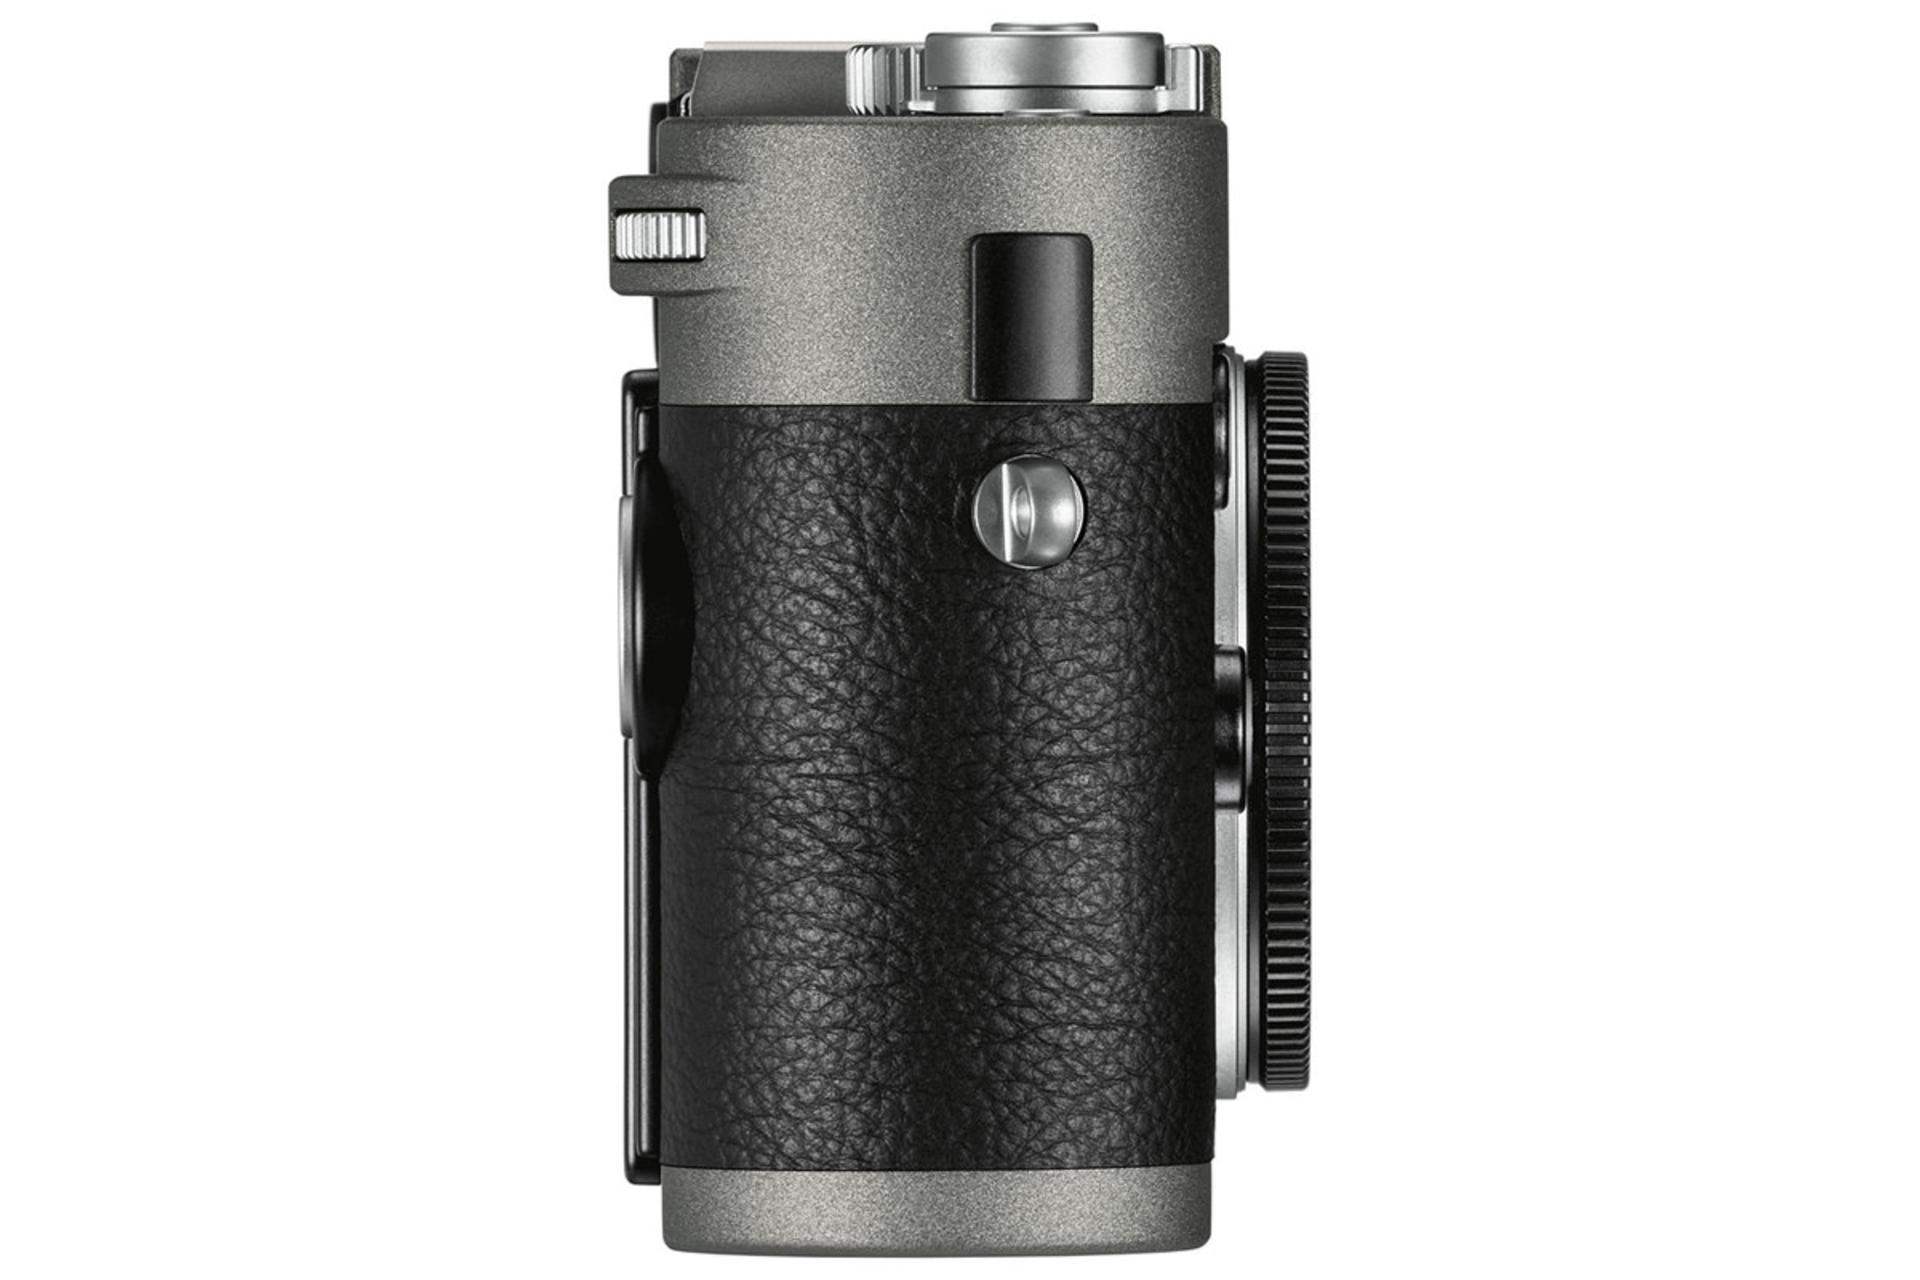 Leica M-E (Typ 240) از برند لایکا